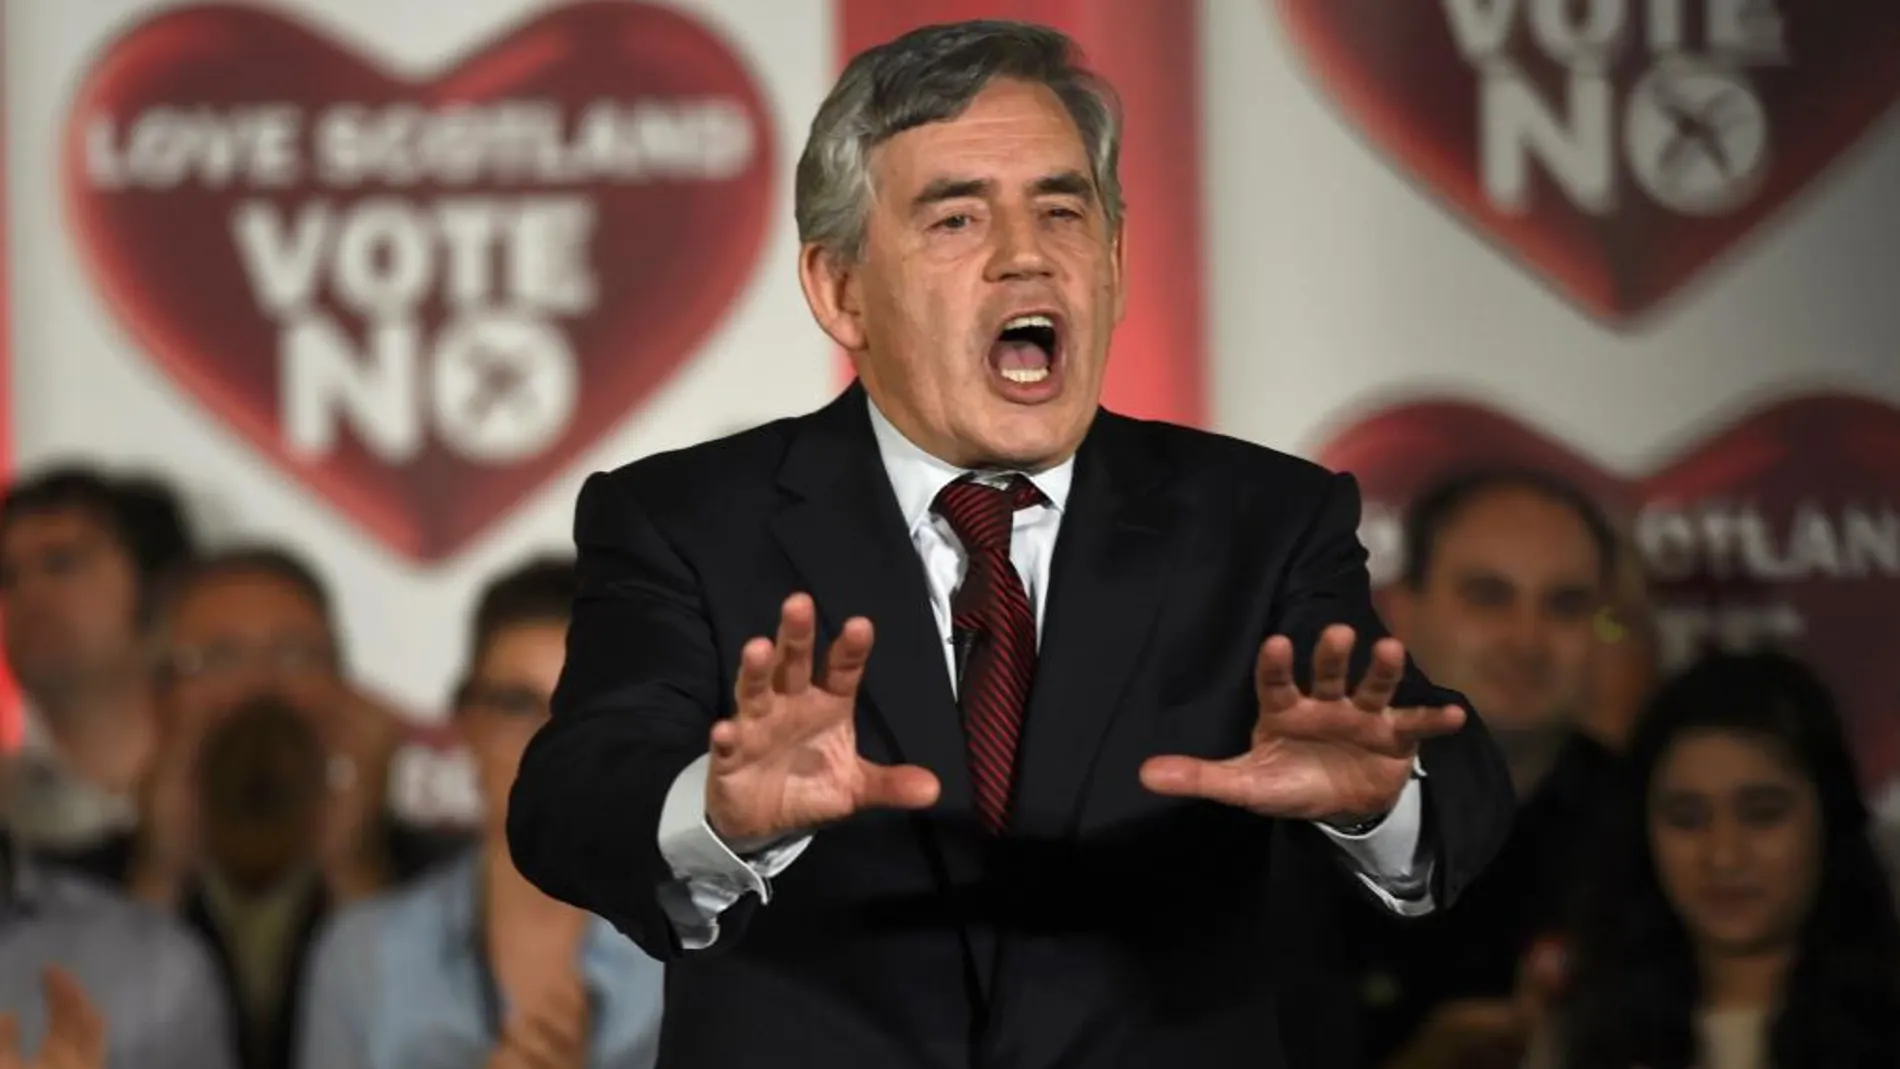 El ex premier laborista Gordon Brown hace campaña por el no en la campaña del reférendum escocés (Reuters)